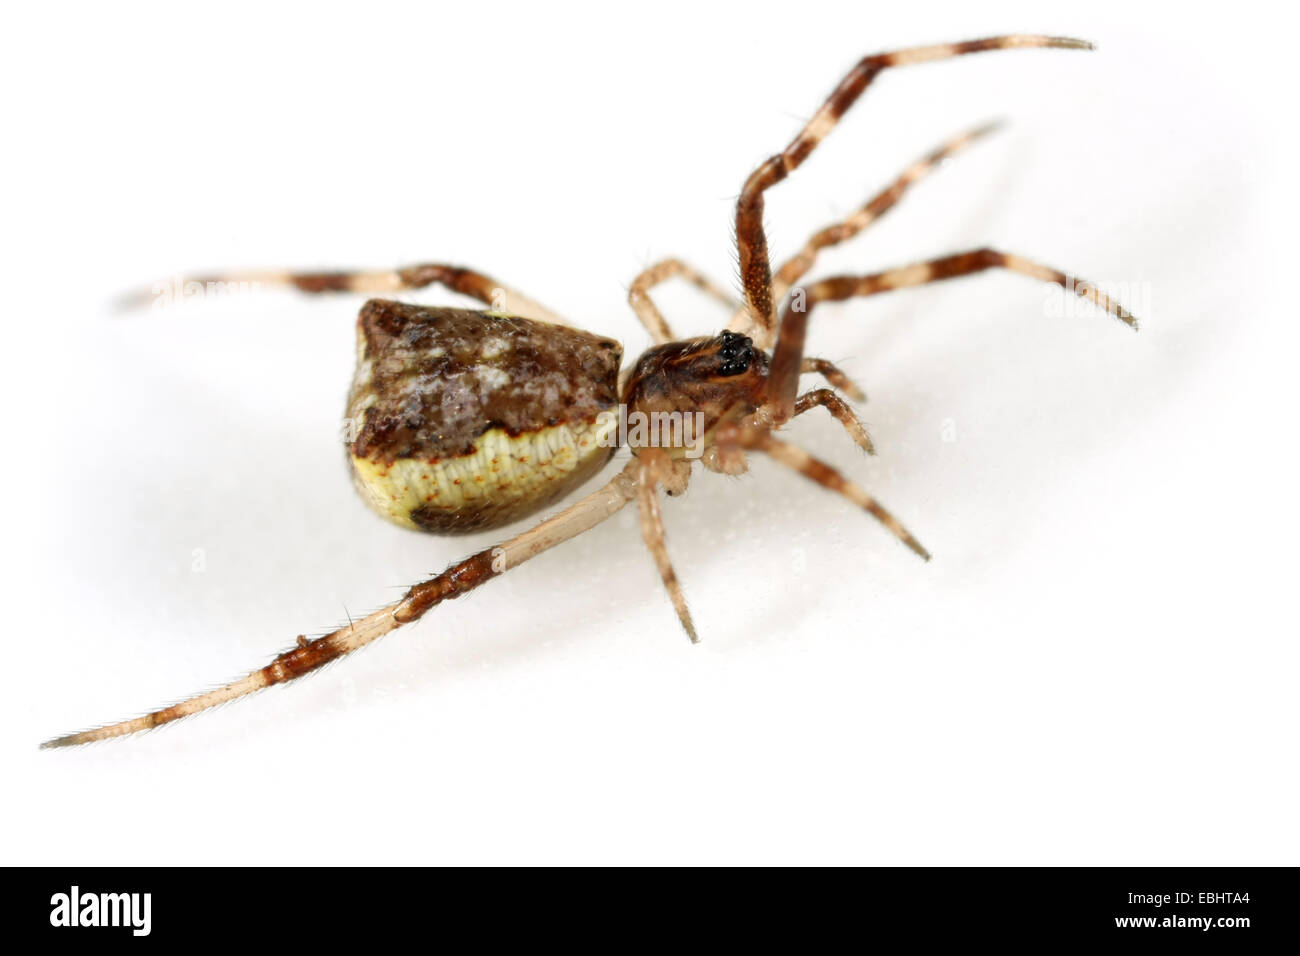 Eine weibliche Kamm-footed Spider (Episinus Angulatus), auf weißem Hintergrund. Kamm-footed Spinnen sind Teil der Familie Theridiidae. Stockfoto